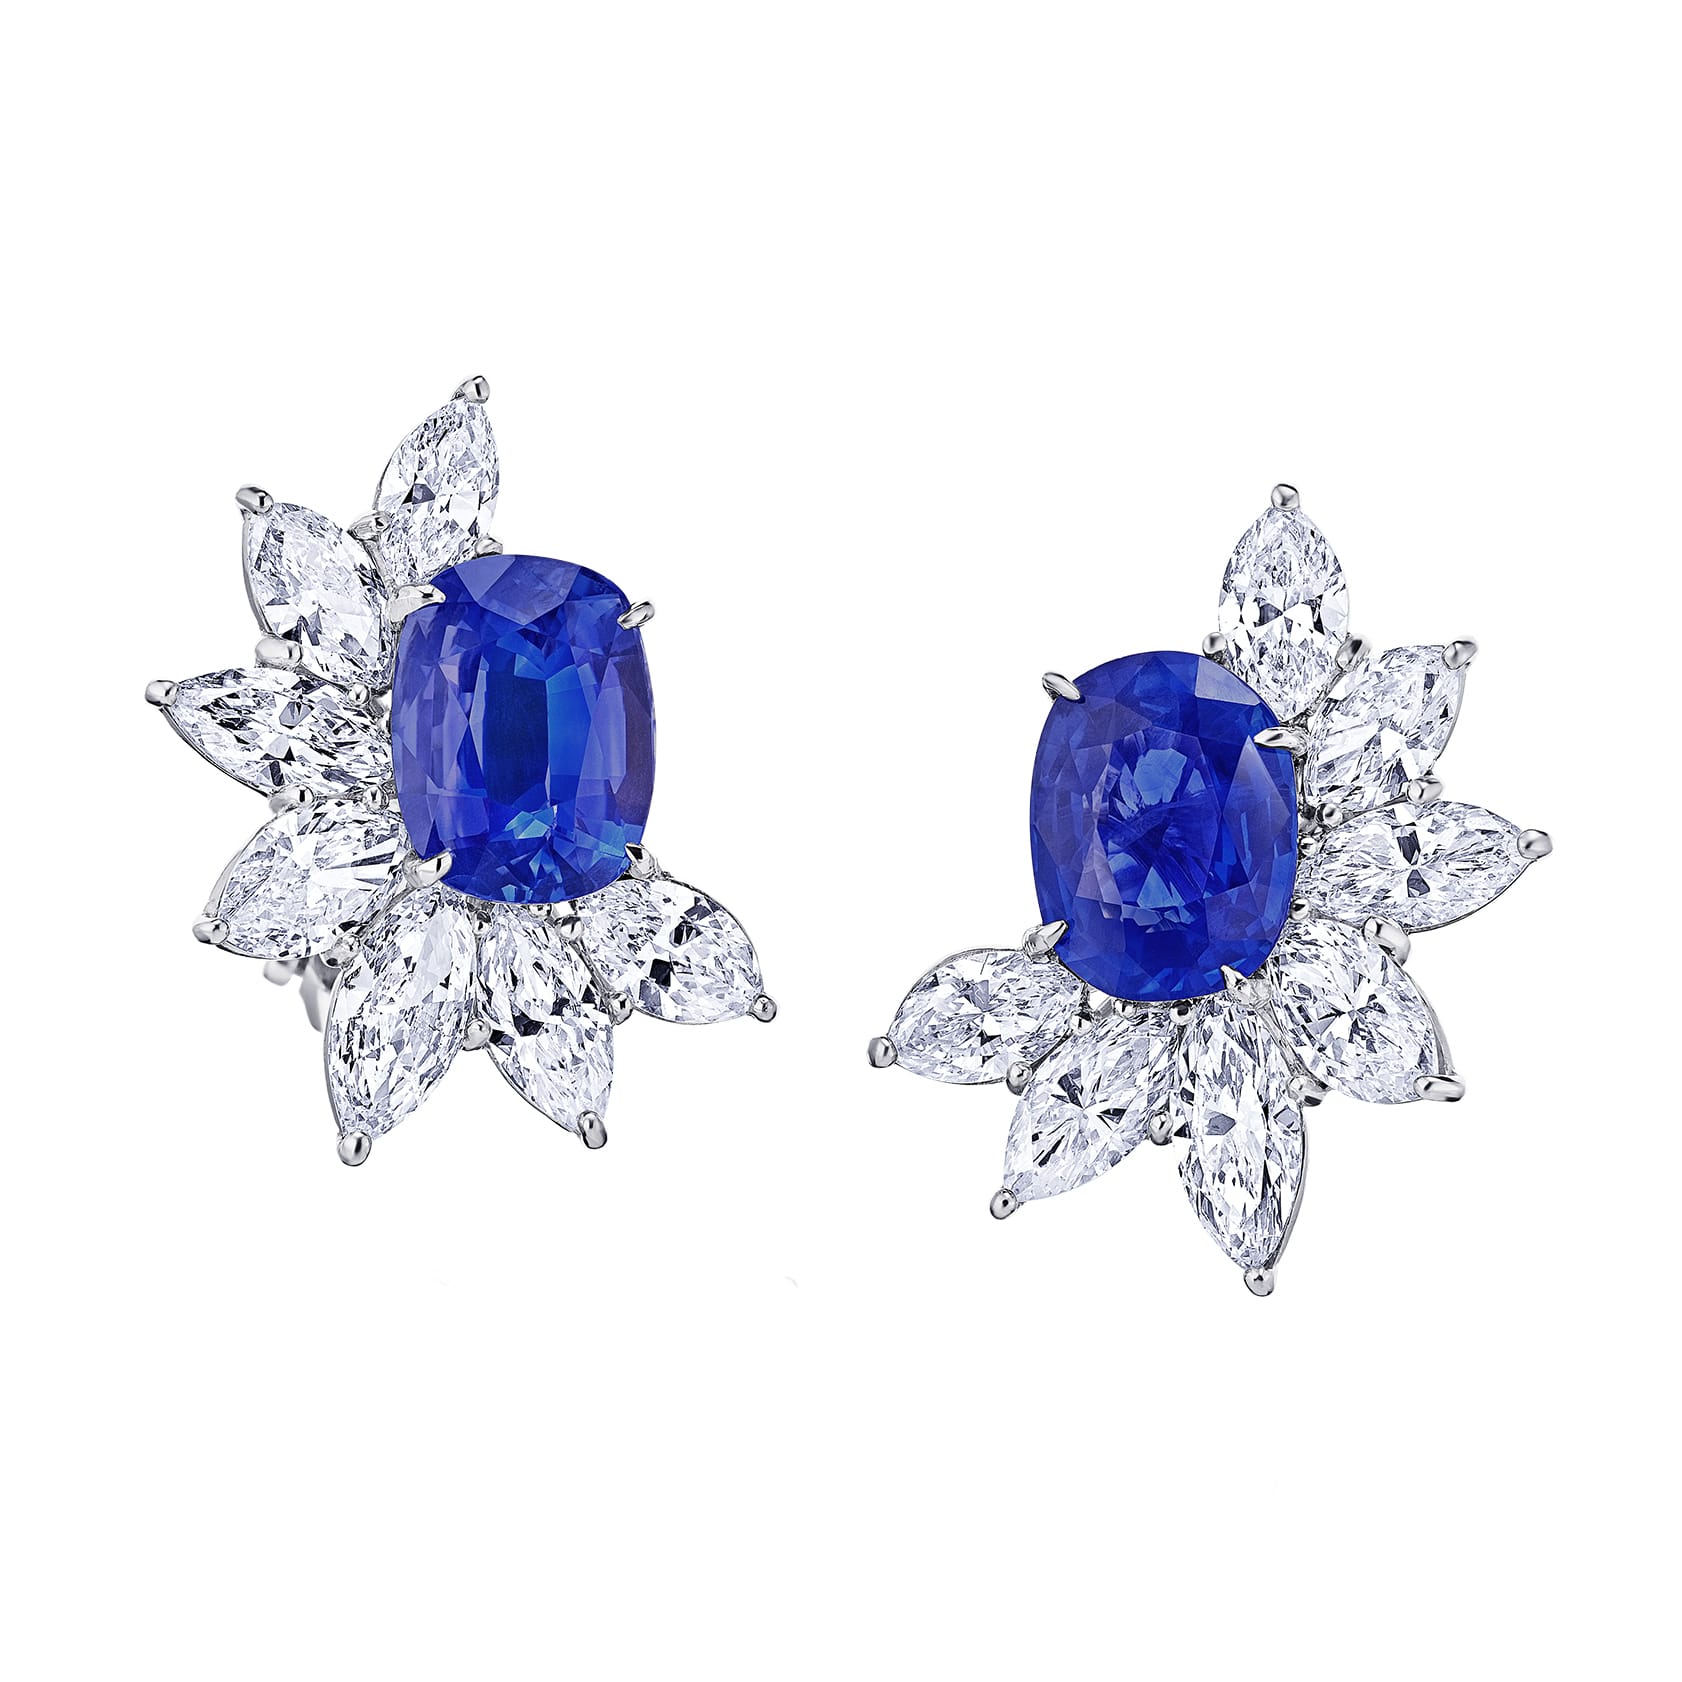 HW Blue Saphire Diamond Cluster Earring